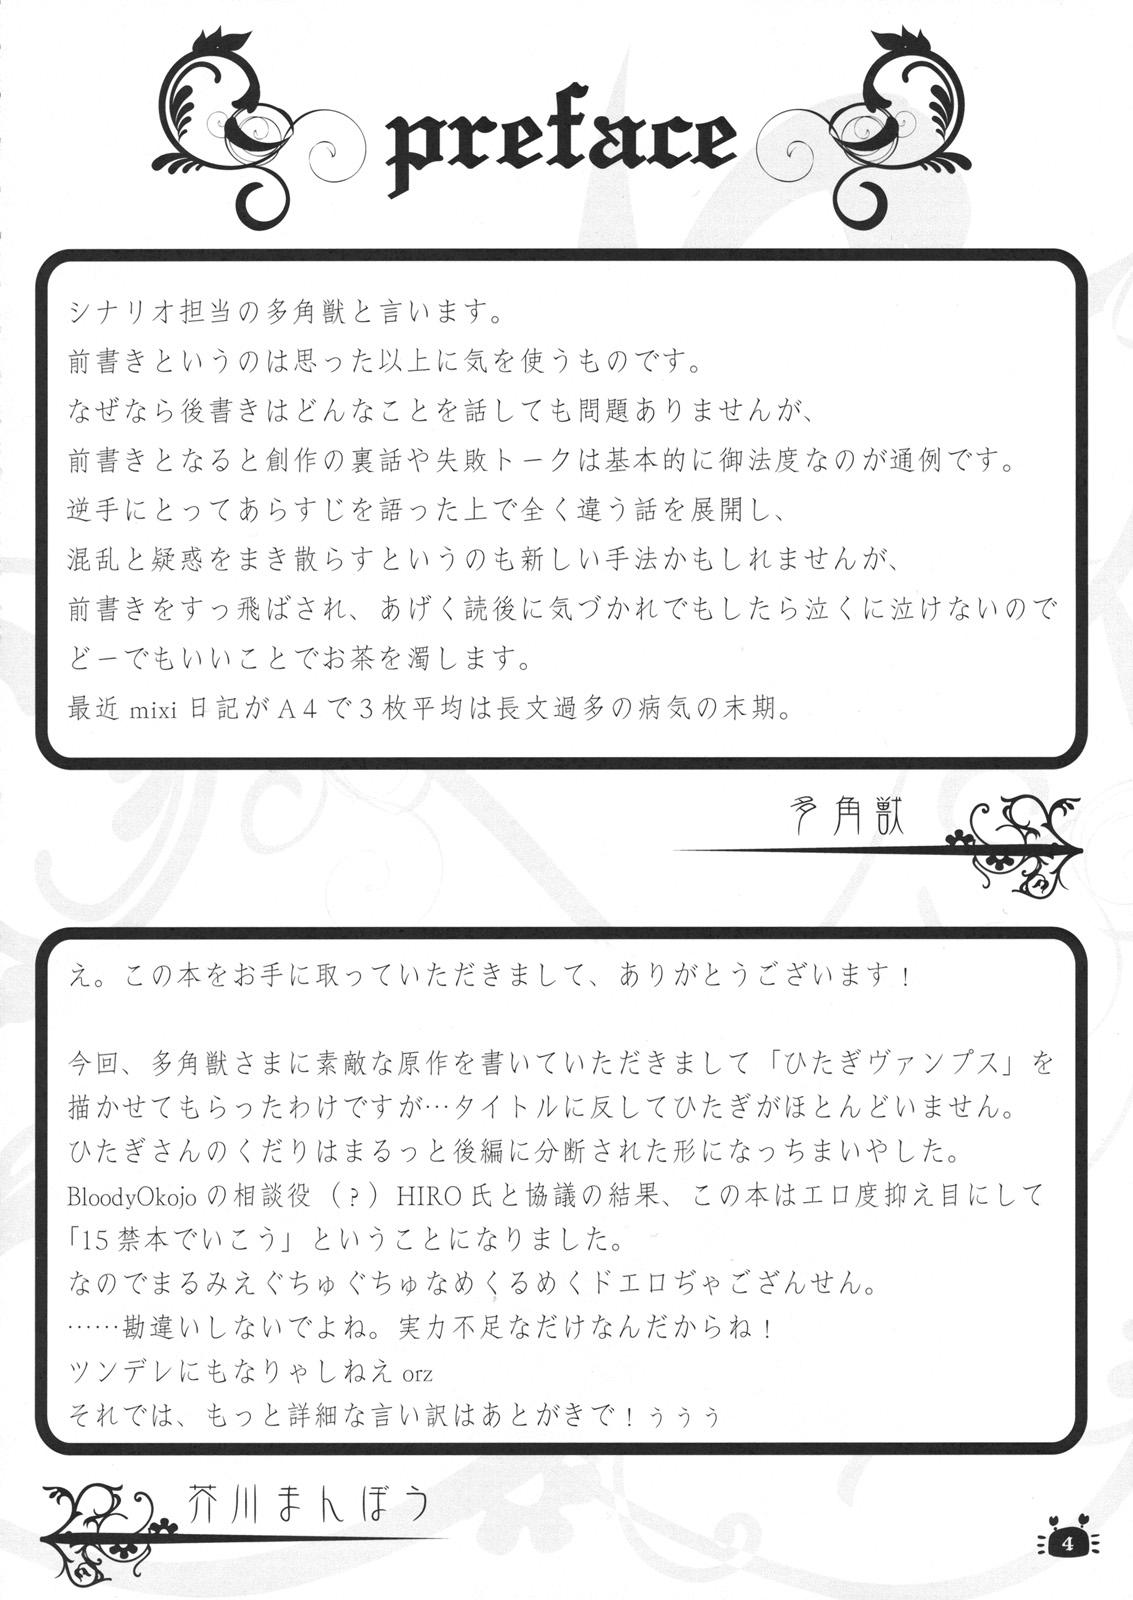 Chaturbate Hitagi Vamps Zenpen - Bakemonogatari Fuck Hard - Page 3